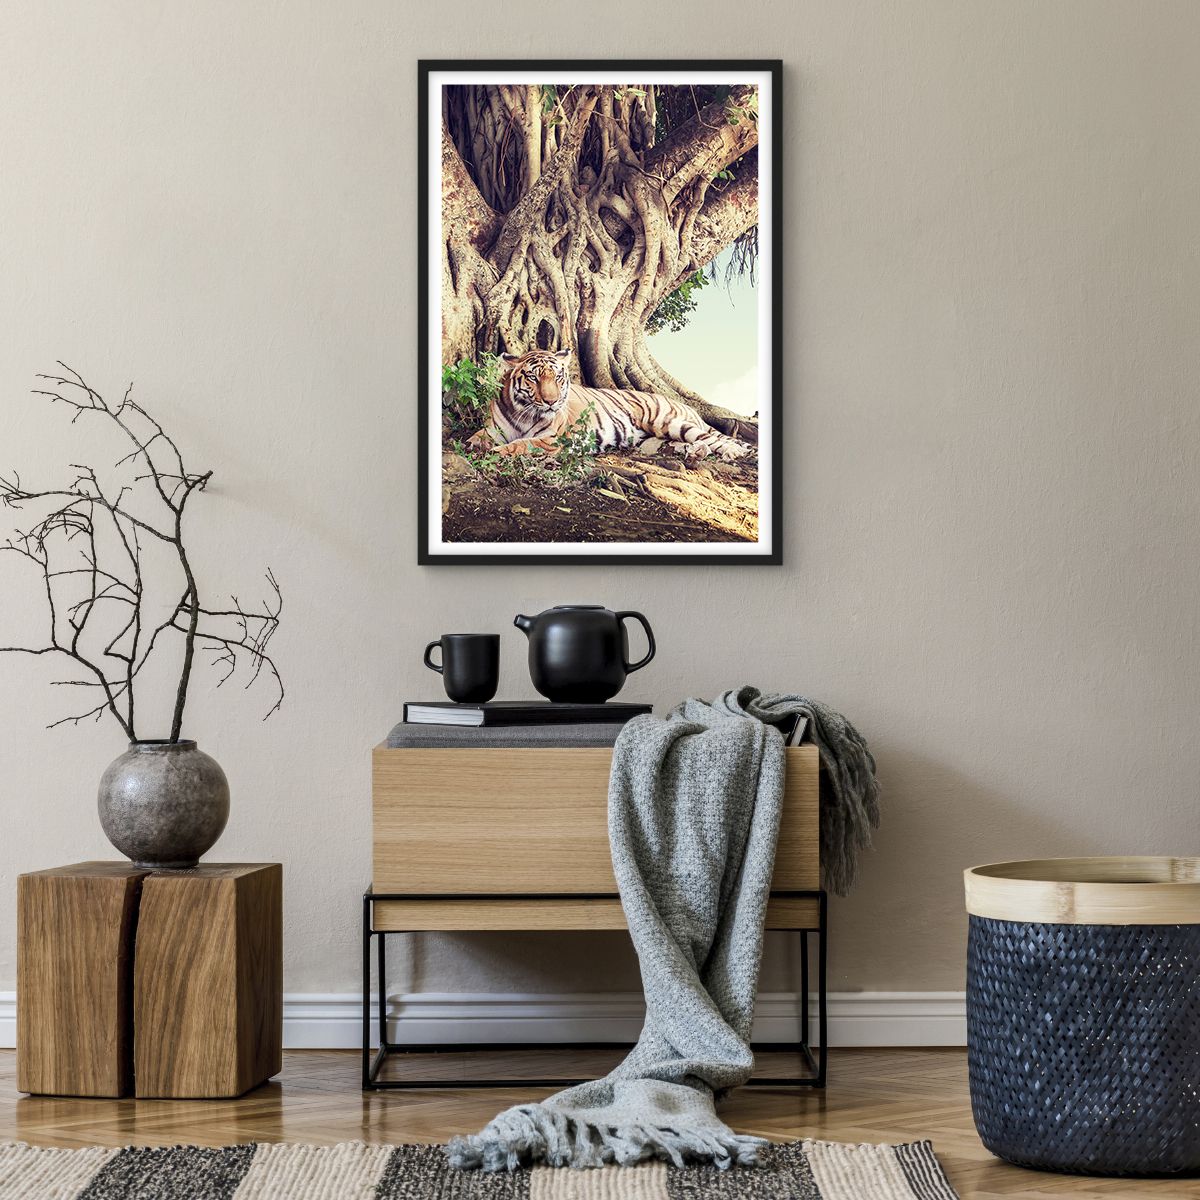 Poster in einem schwarzem Rahmen Bengalischer Tiger, Poster in einem schwarzem Rahmen Indien, Poster in einem schwarzem Rahmen Landschaft, Poster in einem schwarzem Rahmen Natur, Poster in einem schwarzem Rahmen Baum